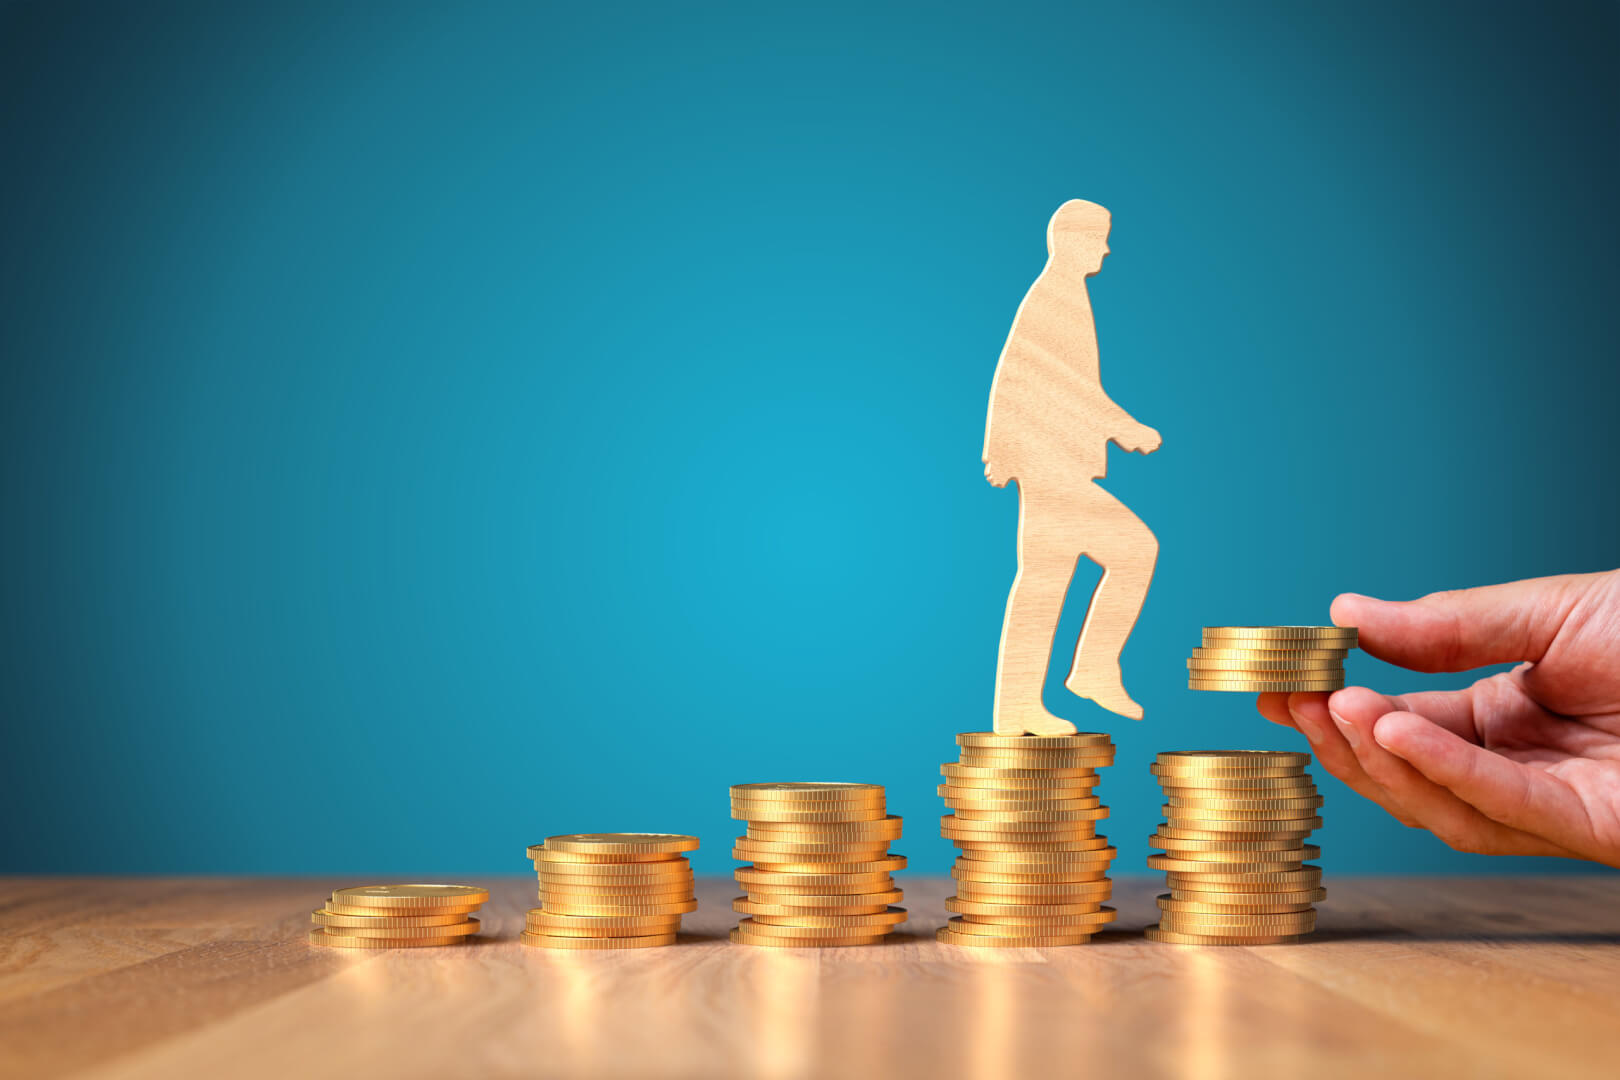 La imagen muestra una ilustración de un trozo de cartón con la silueta de un hombre caminando encima de monedas ejemplificando la evolución del aumento del salario de los cuidadores con el paso de los años. 